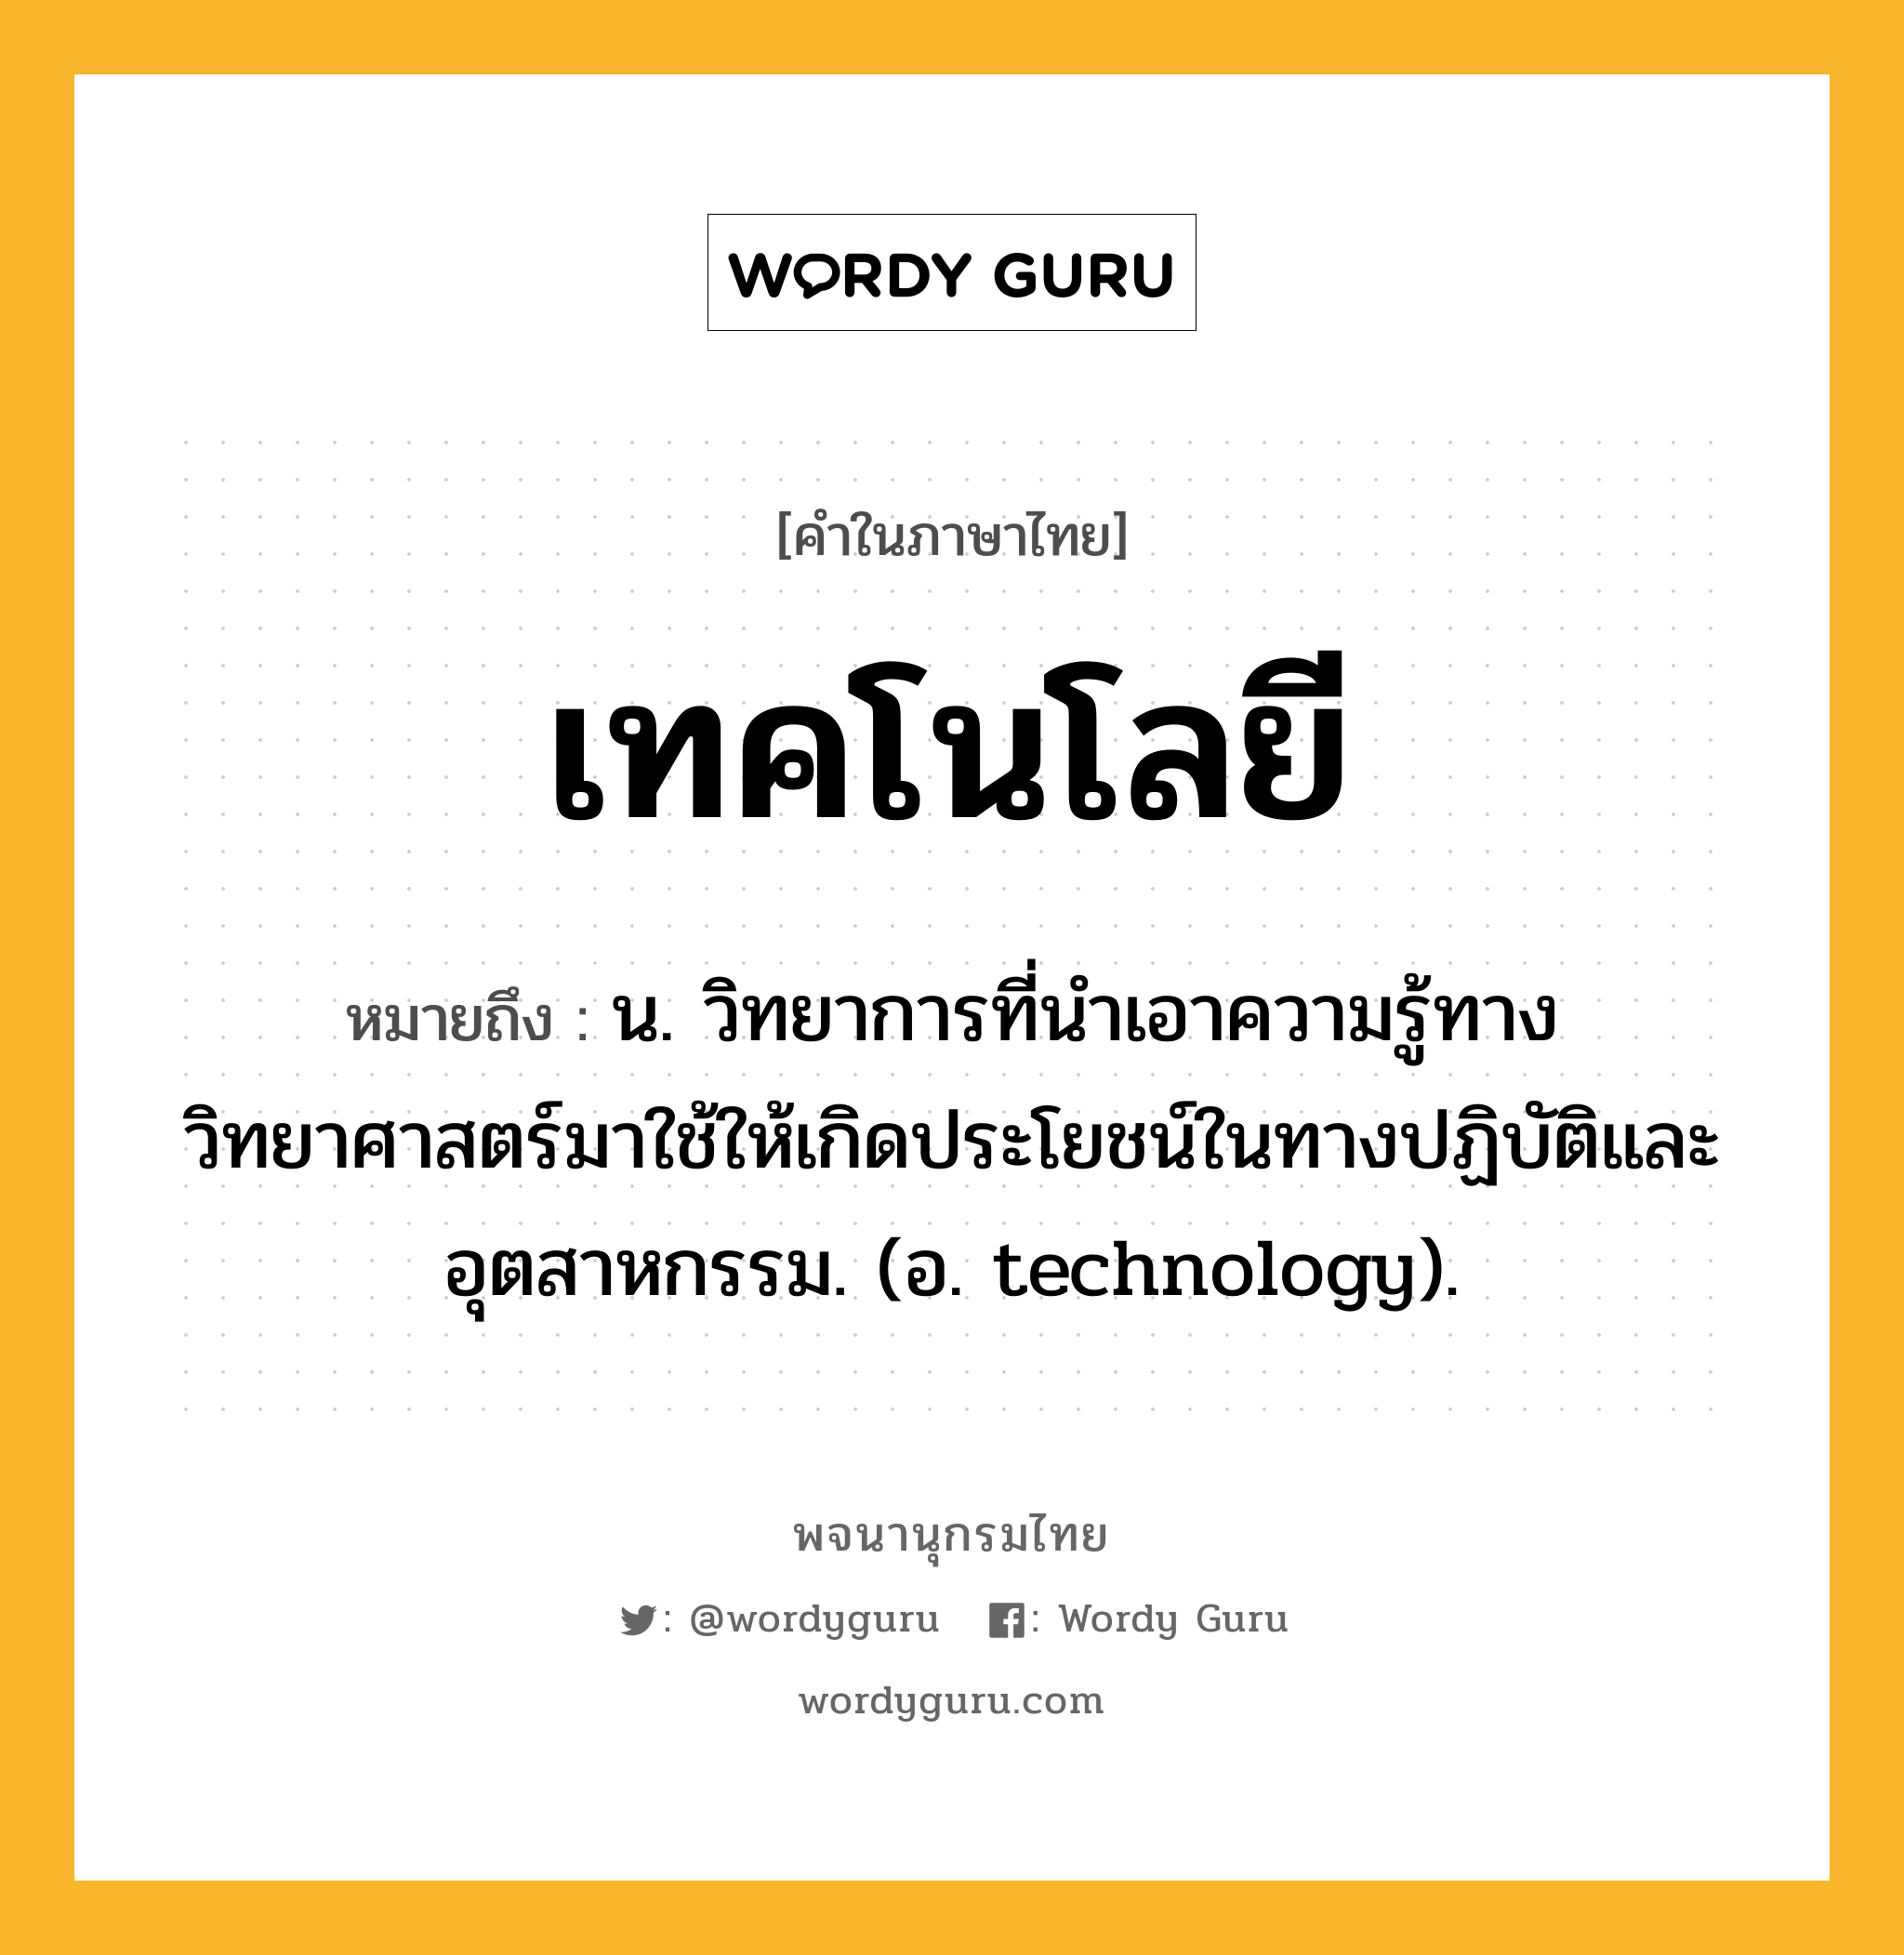 เทคโนโลยี หมายถึงอะไร?, คำในภาษาไทย เทคโนโลยี หมายถึง น. วิทยาการที่นำเอาความรู้ทางวิทยาศาสตร์มาใช้ให้เกิดประโยชน์ในทางปฏิบัติและอุตสาหกรรม. (อ. technology).